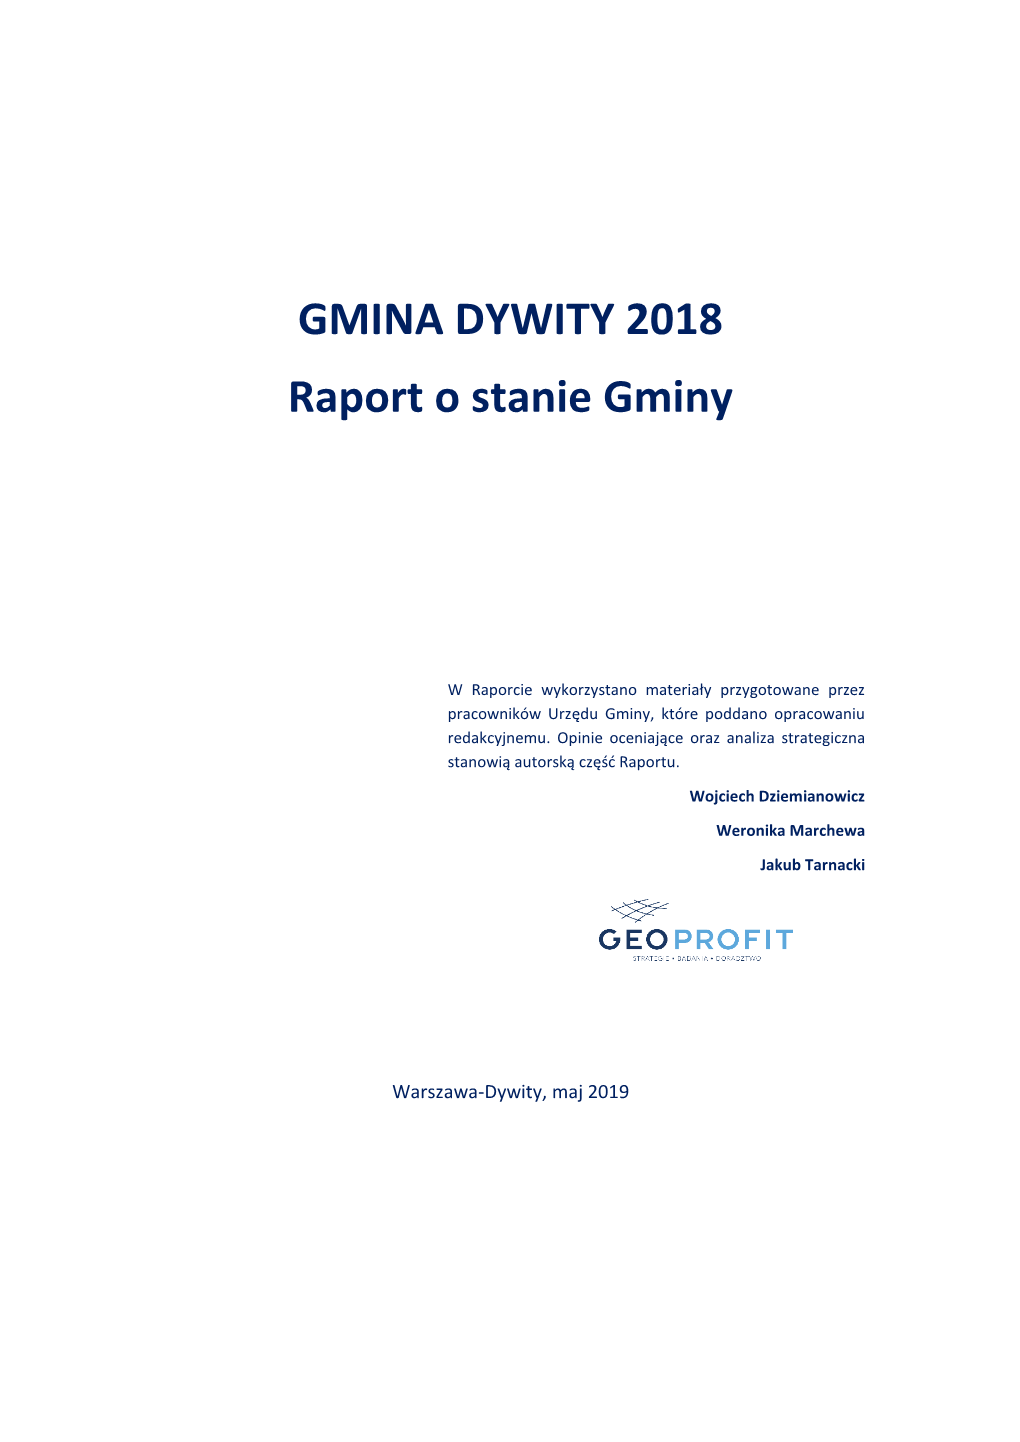 GMINA DYWITY 2018 Raport O Stanie Gminy